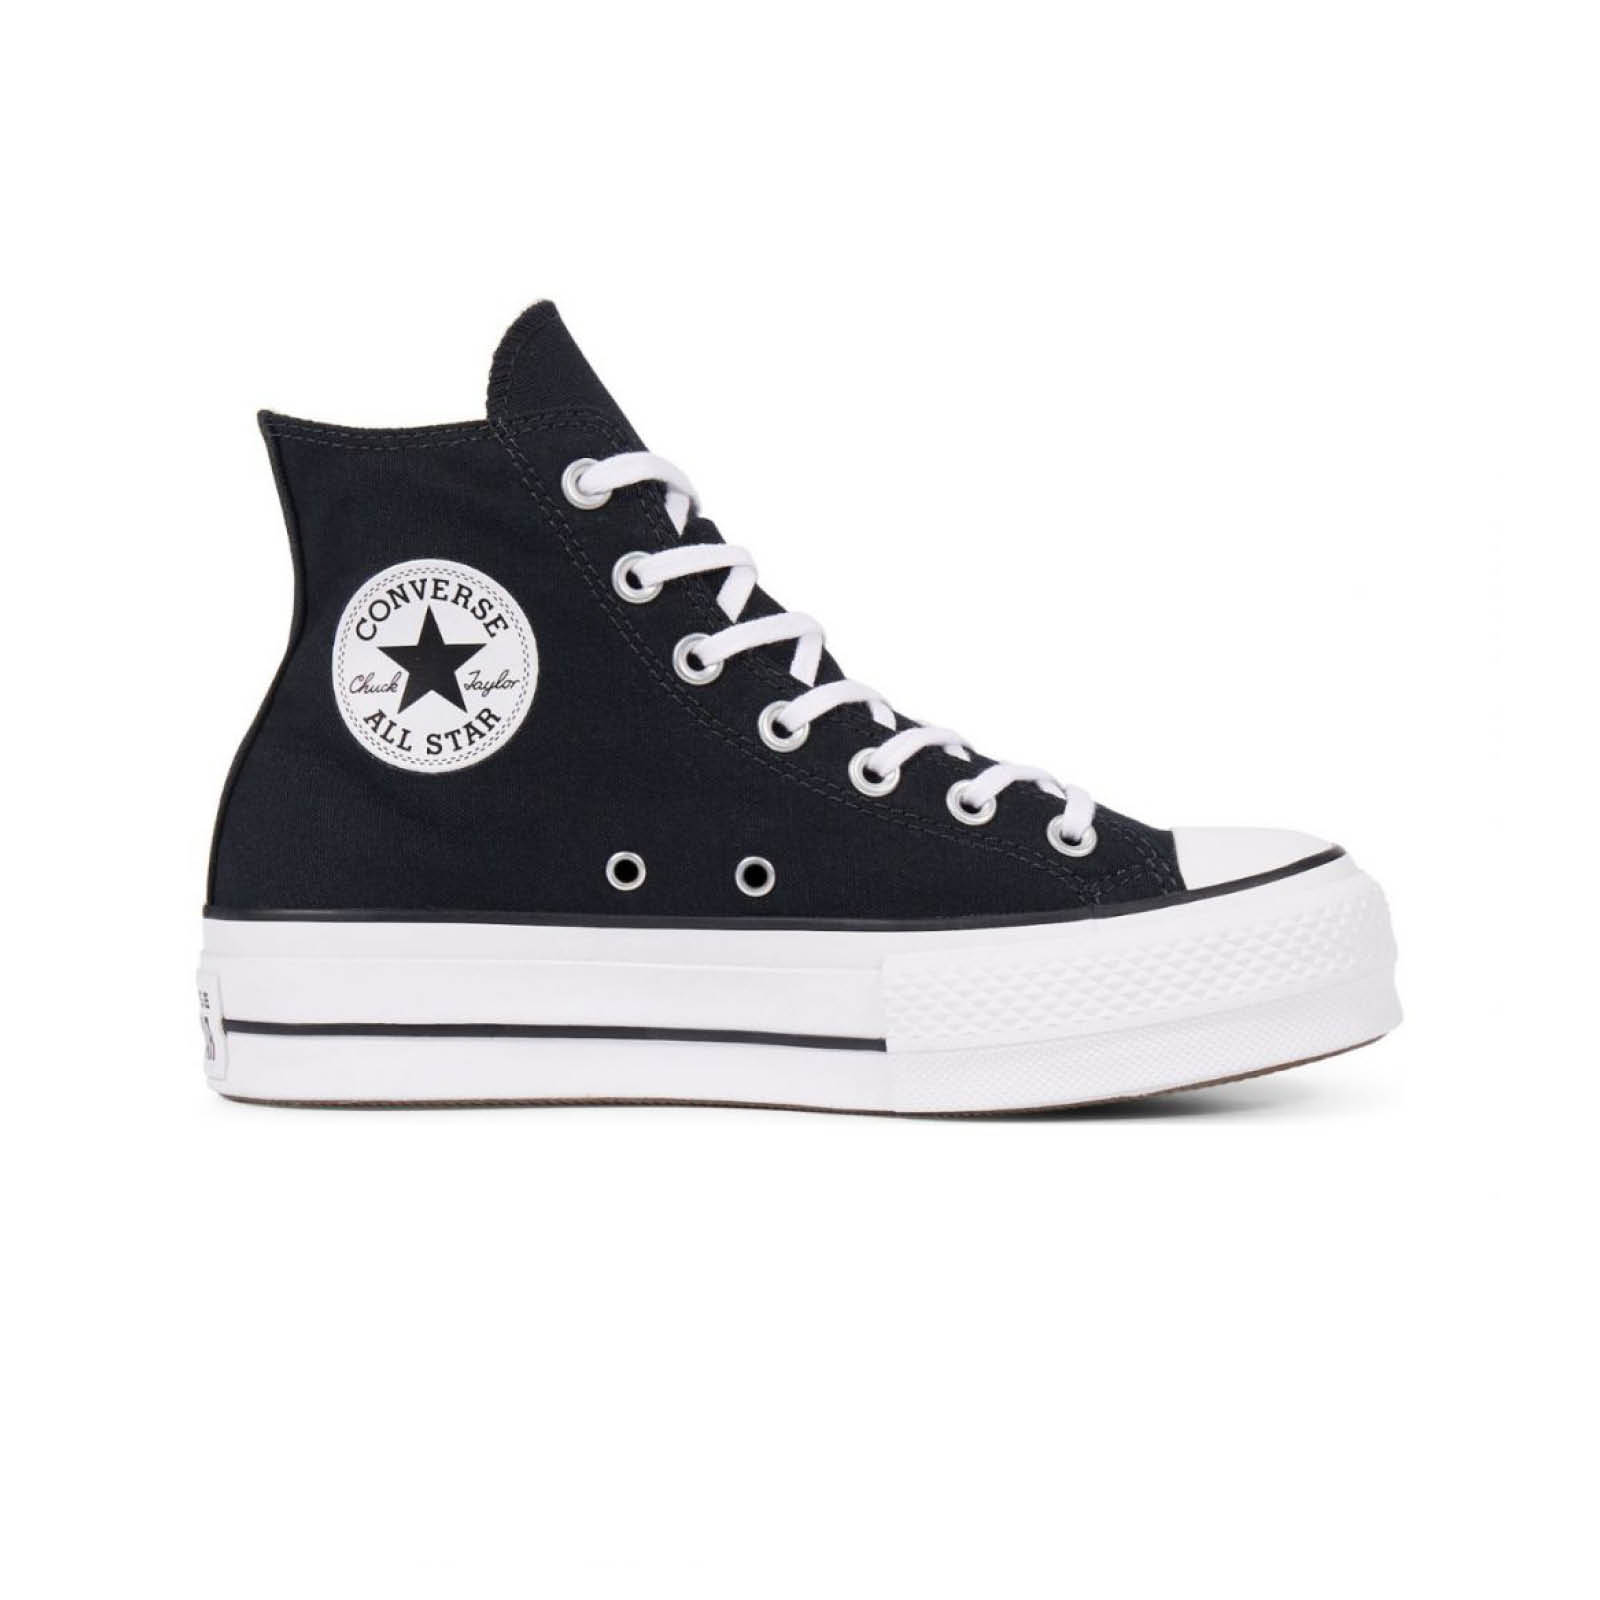 Γυναικεία > Παπούτσια > Sneaker > Μποτάκι High Cut Converse - CHUCK TAYLOR ALL STAR LIFT - 001-BLACK/WHITE/WHITE